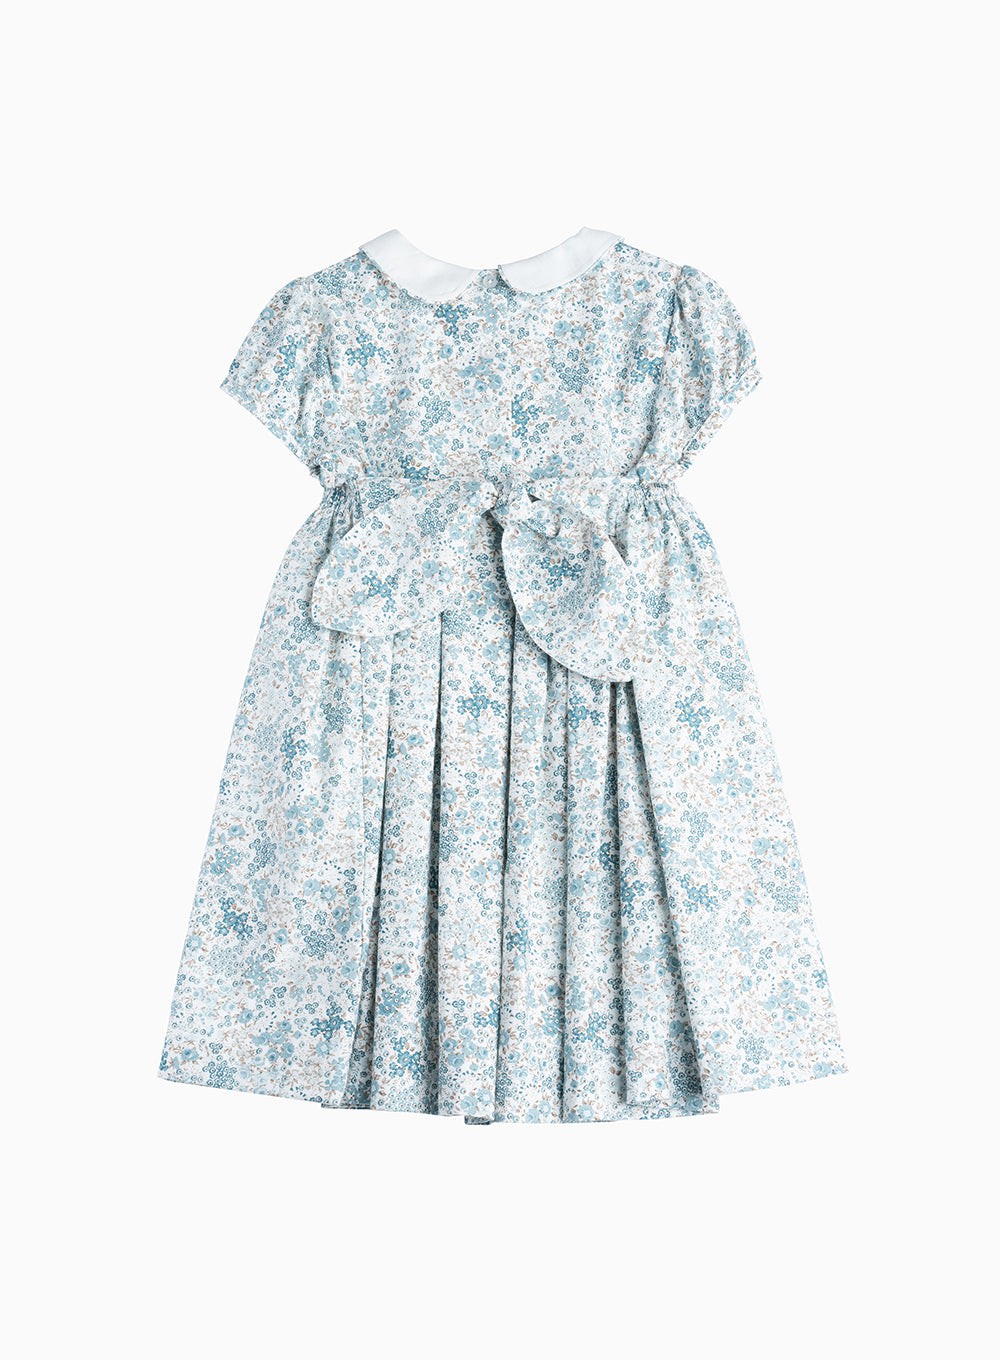 Confiture Dress Arabella Bloom Smocked Dress in Sea Blue Floral